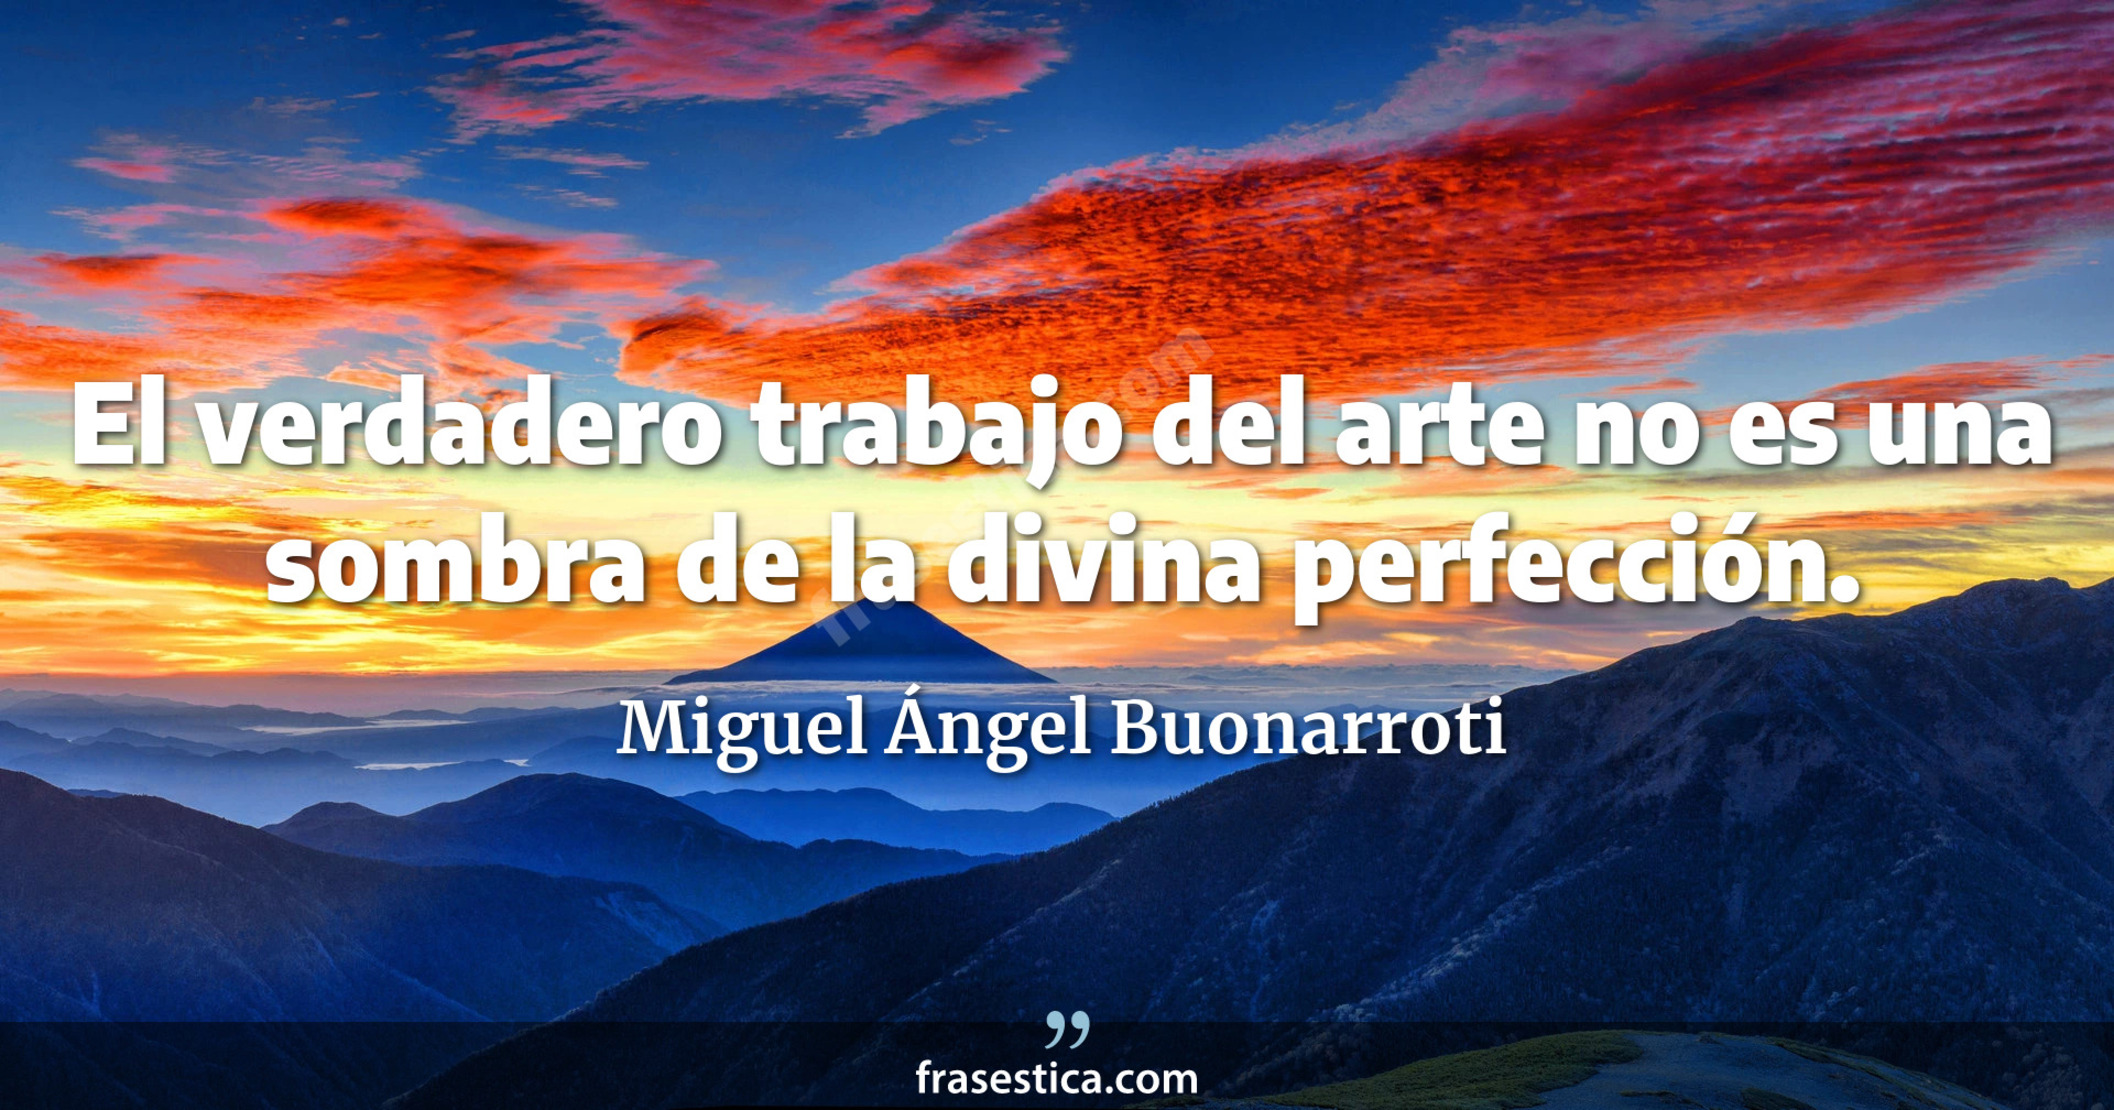 El verdadero trabajo del arte no es una sombra de la divina perfección. - Miguel Ángel Buonarroti